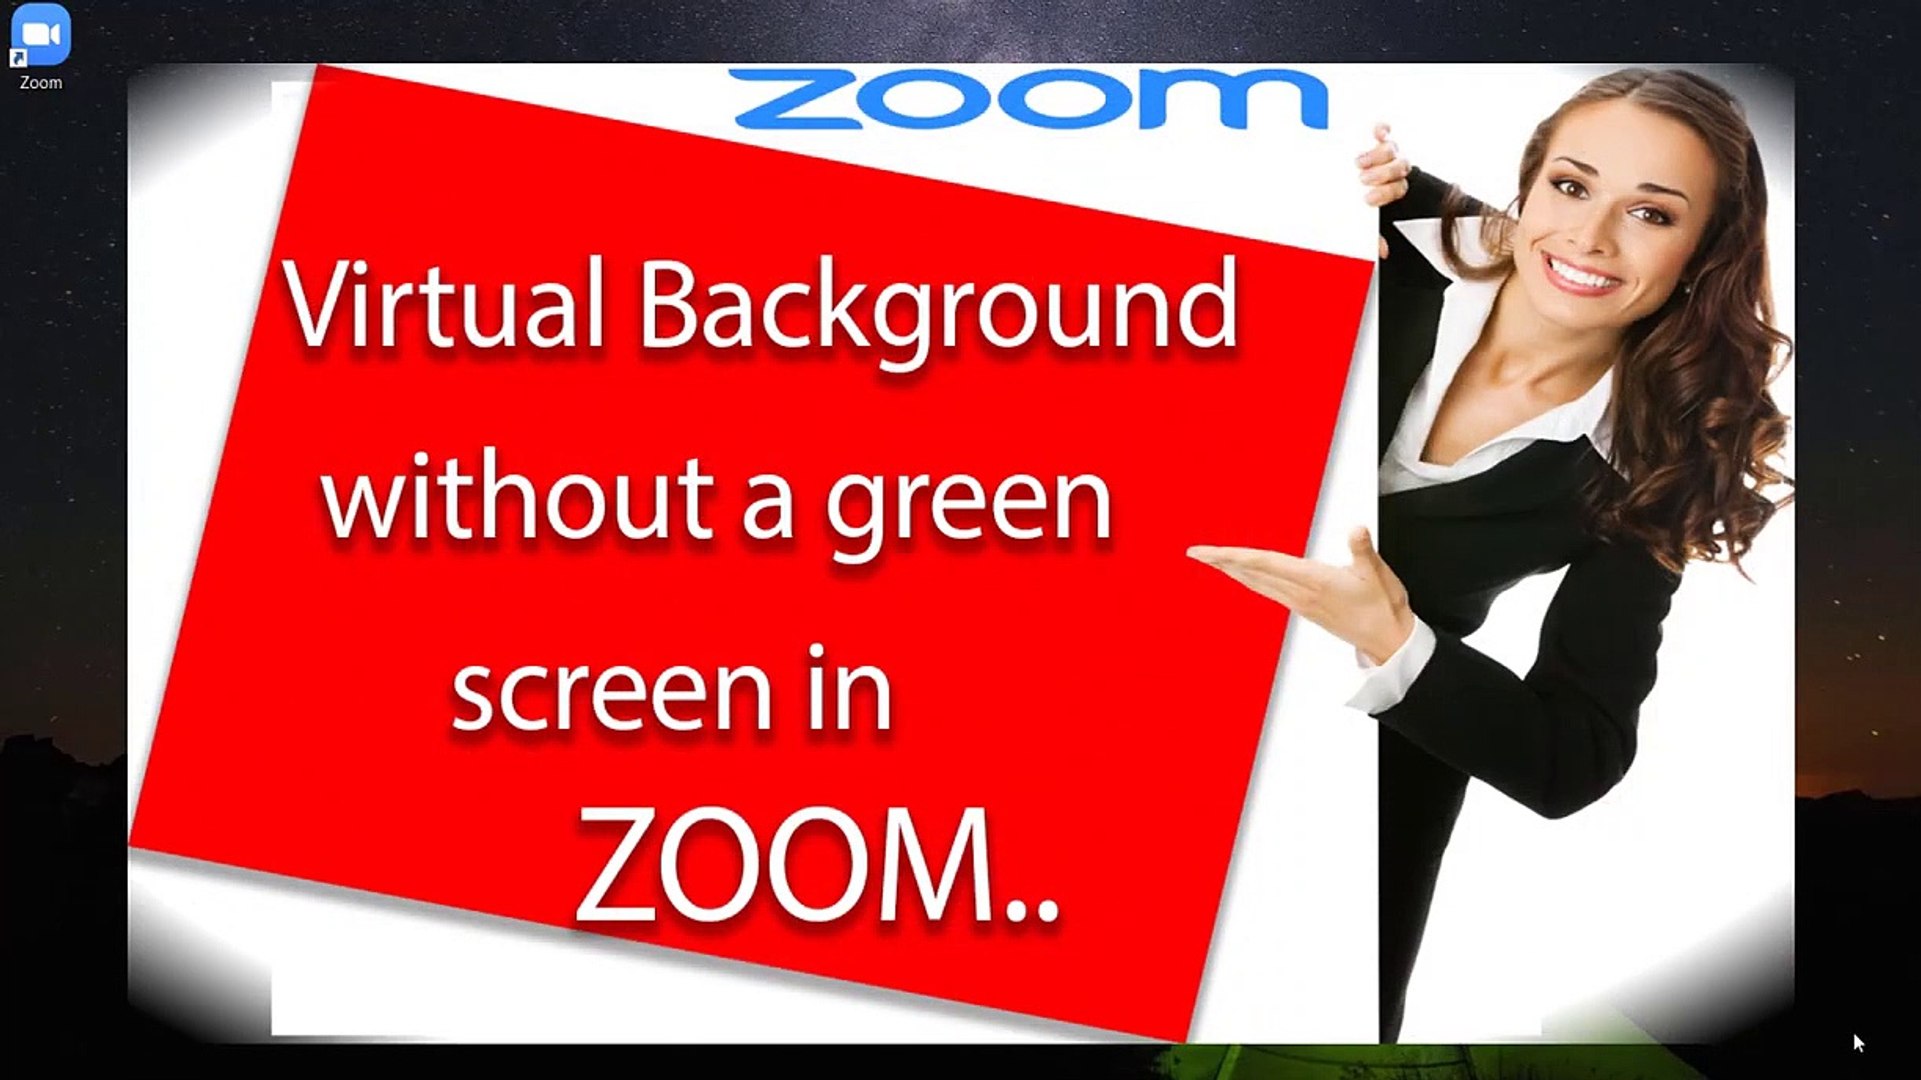 Hướng dẫn đặt hình nền ảo trên Zoom không cần màn hình xanh: Bạn không phải là chuyên gia công nghệ để có thể đặt hình nền ảo trên Zoom. Với những hướng dẫn đơn giản và rõ ràng, bạn sẽ trở thành chuyên gia tạo hình nền của riêng mình.